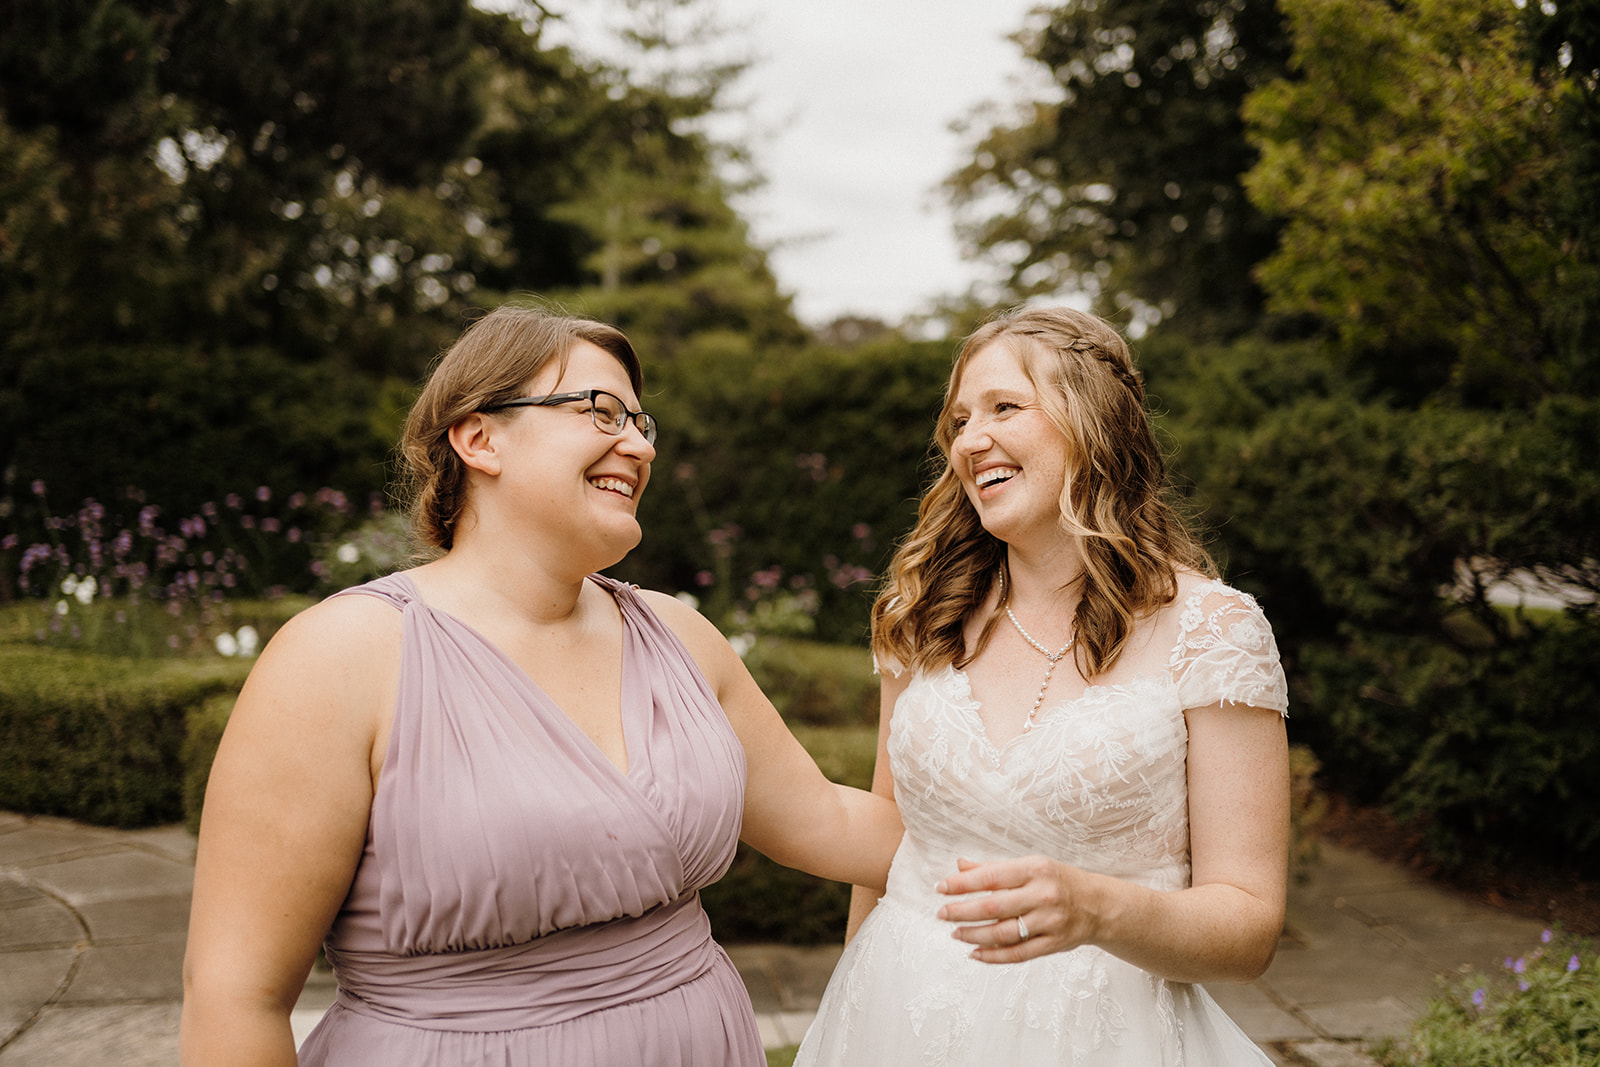 Bride smiling with bridesmaid.